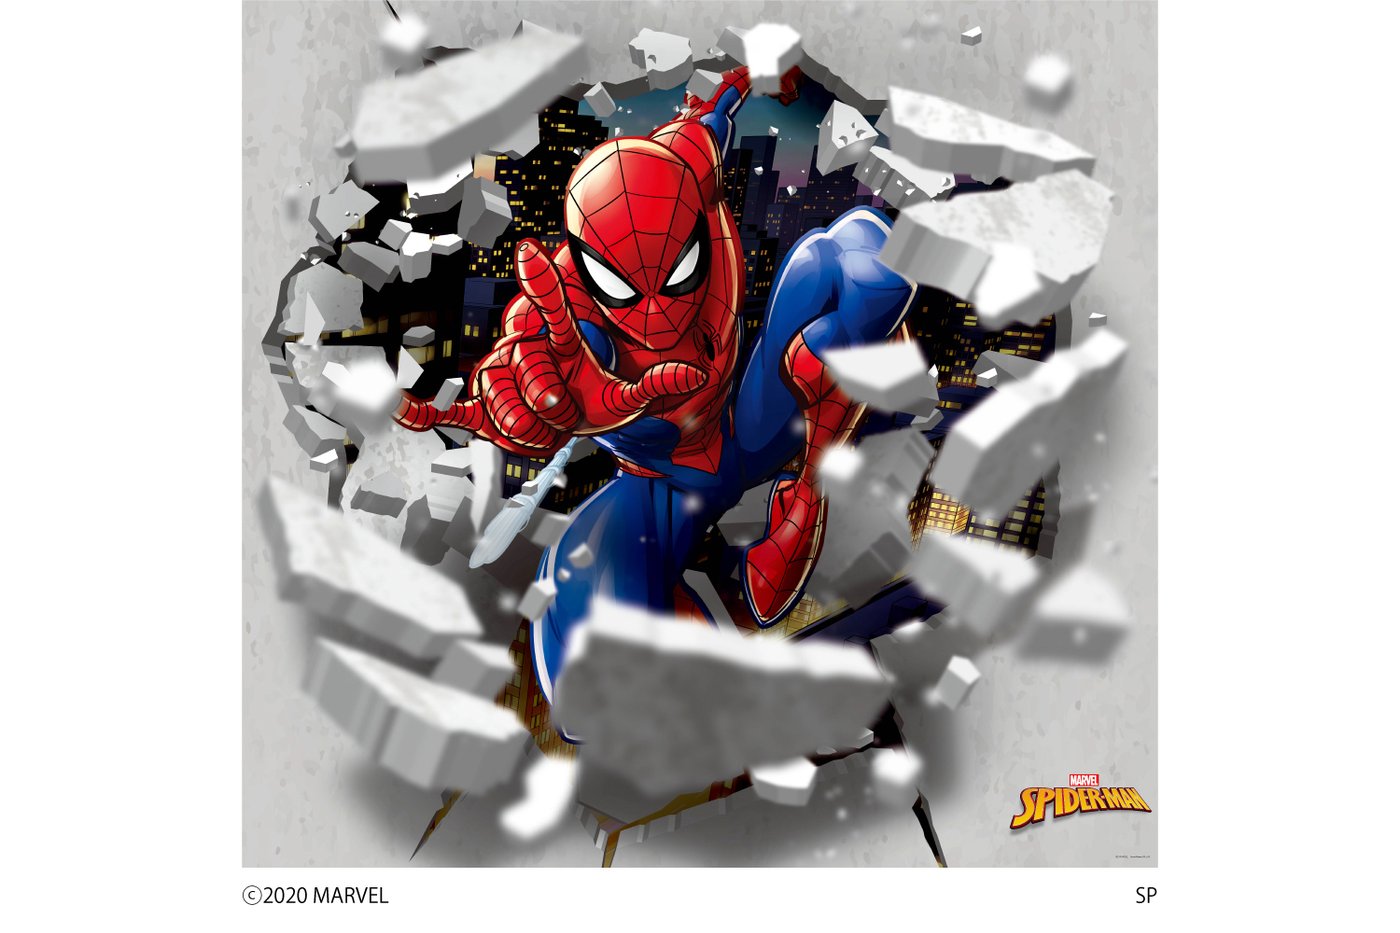 Marvel マーベル Spider Man 壁紙素材ウォールステッカー スパイダーマン 6シートタイプ スパイダーマン Wall Paper M031 6 プリテック Artingroup Ae